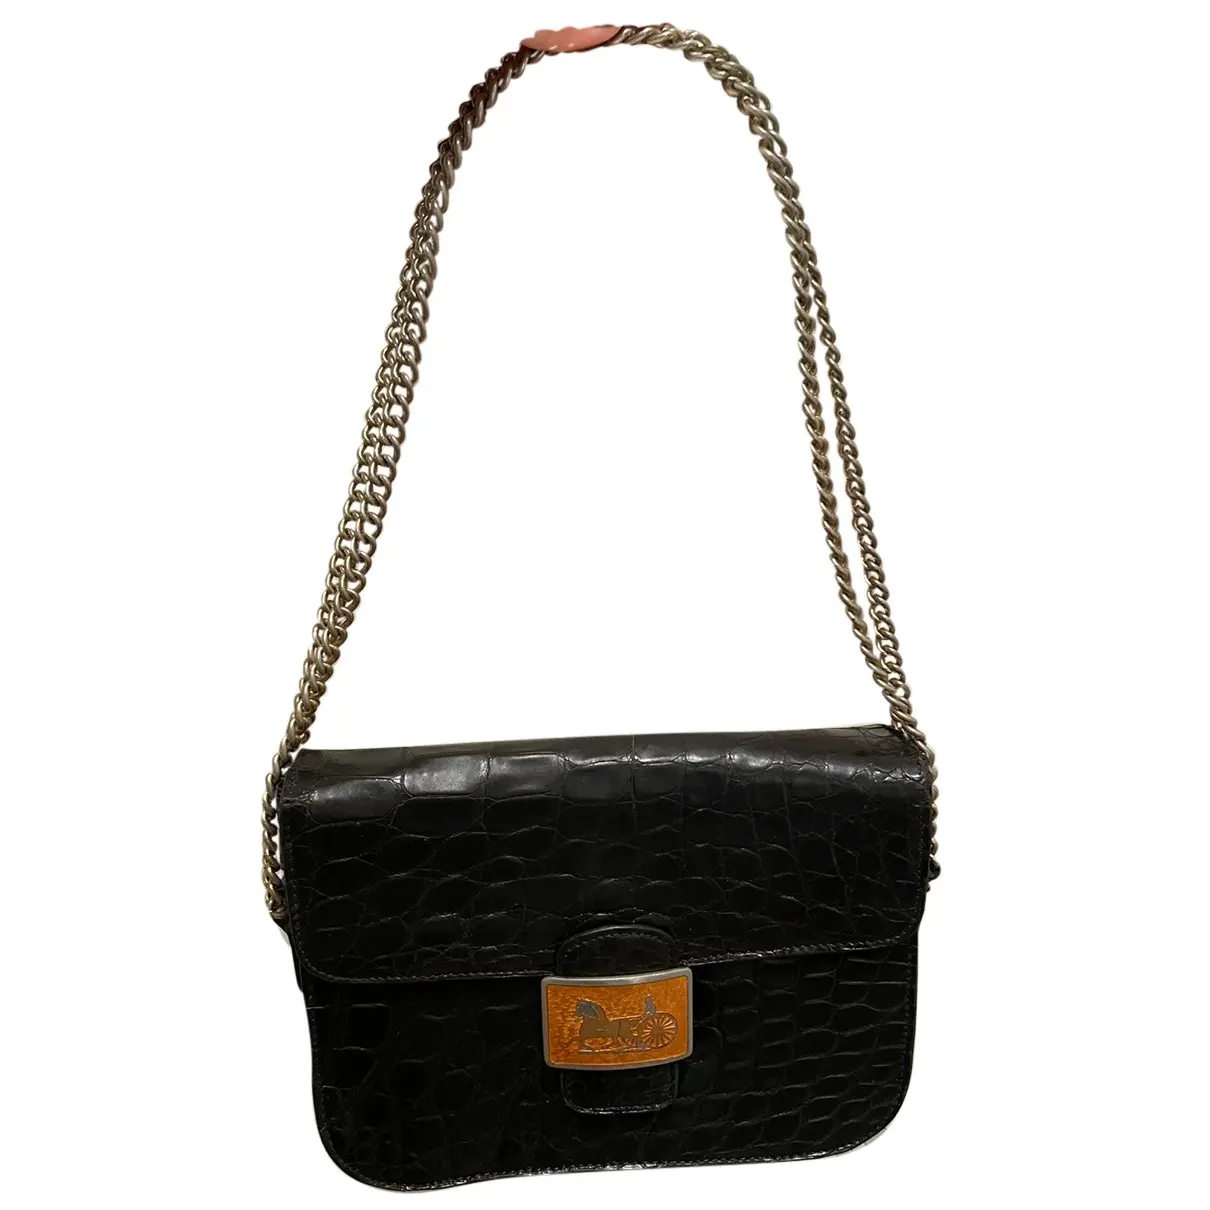 Triomphe leather handbag Celine - Vintage